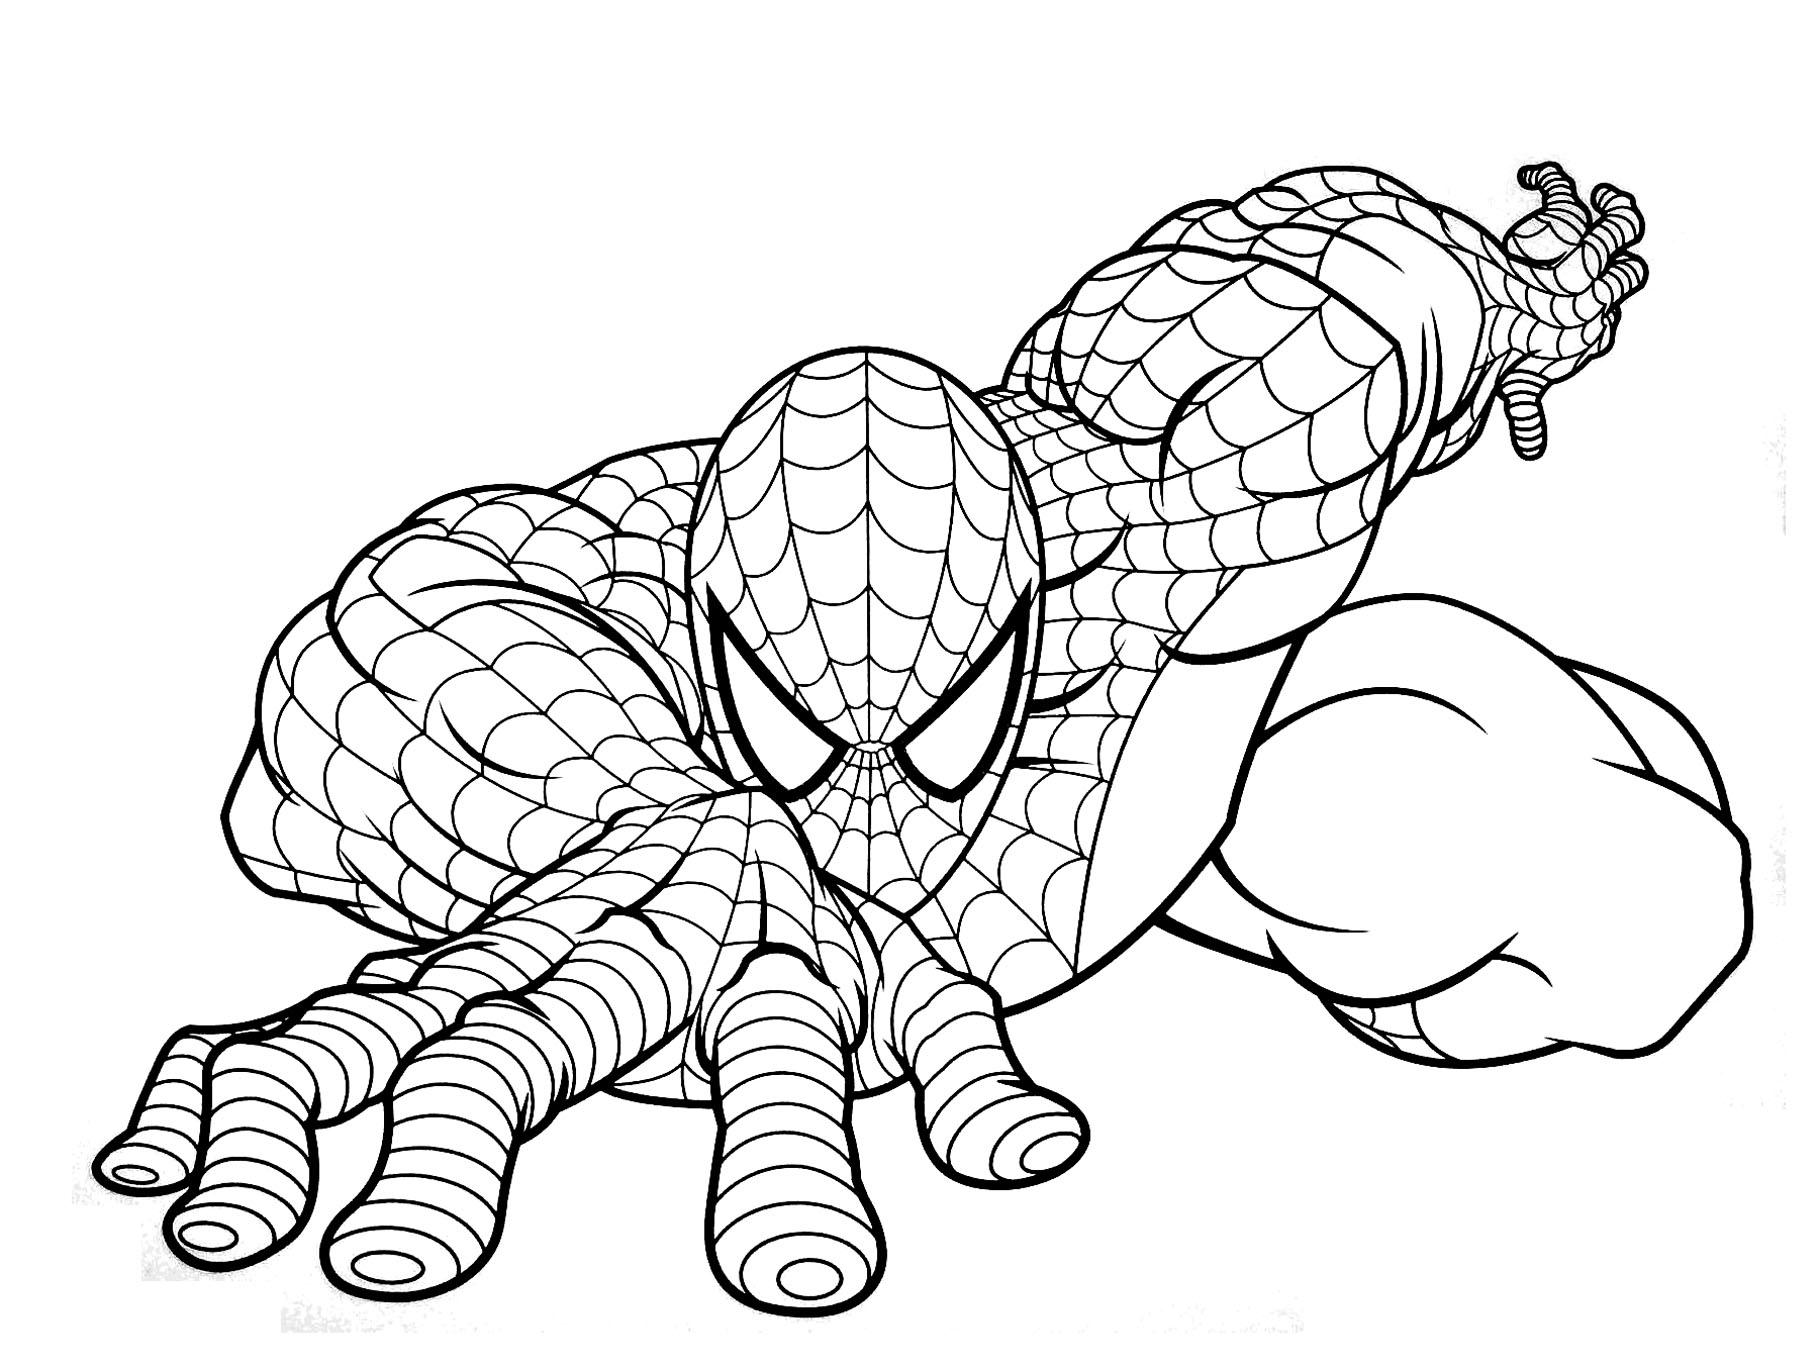 Spiderman drawing | Art Amino